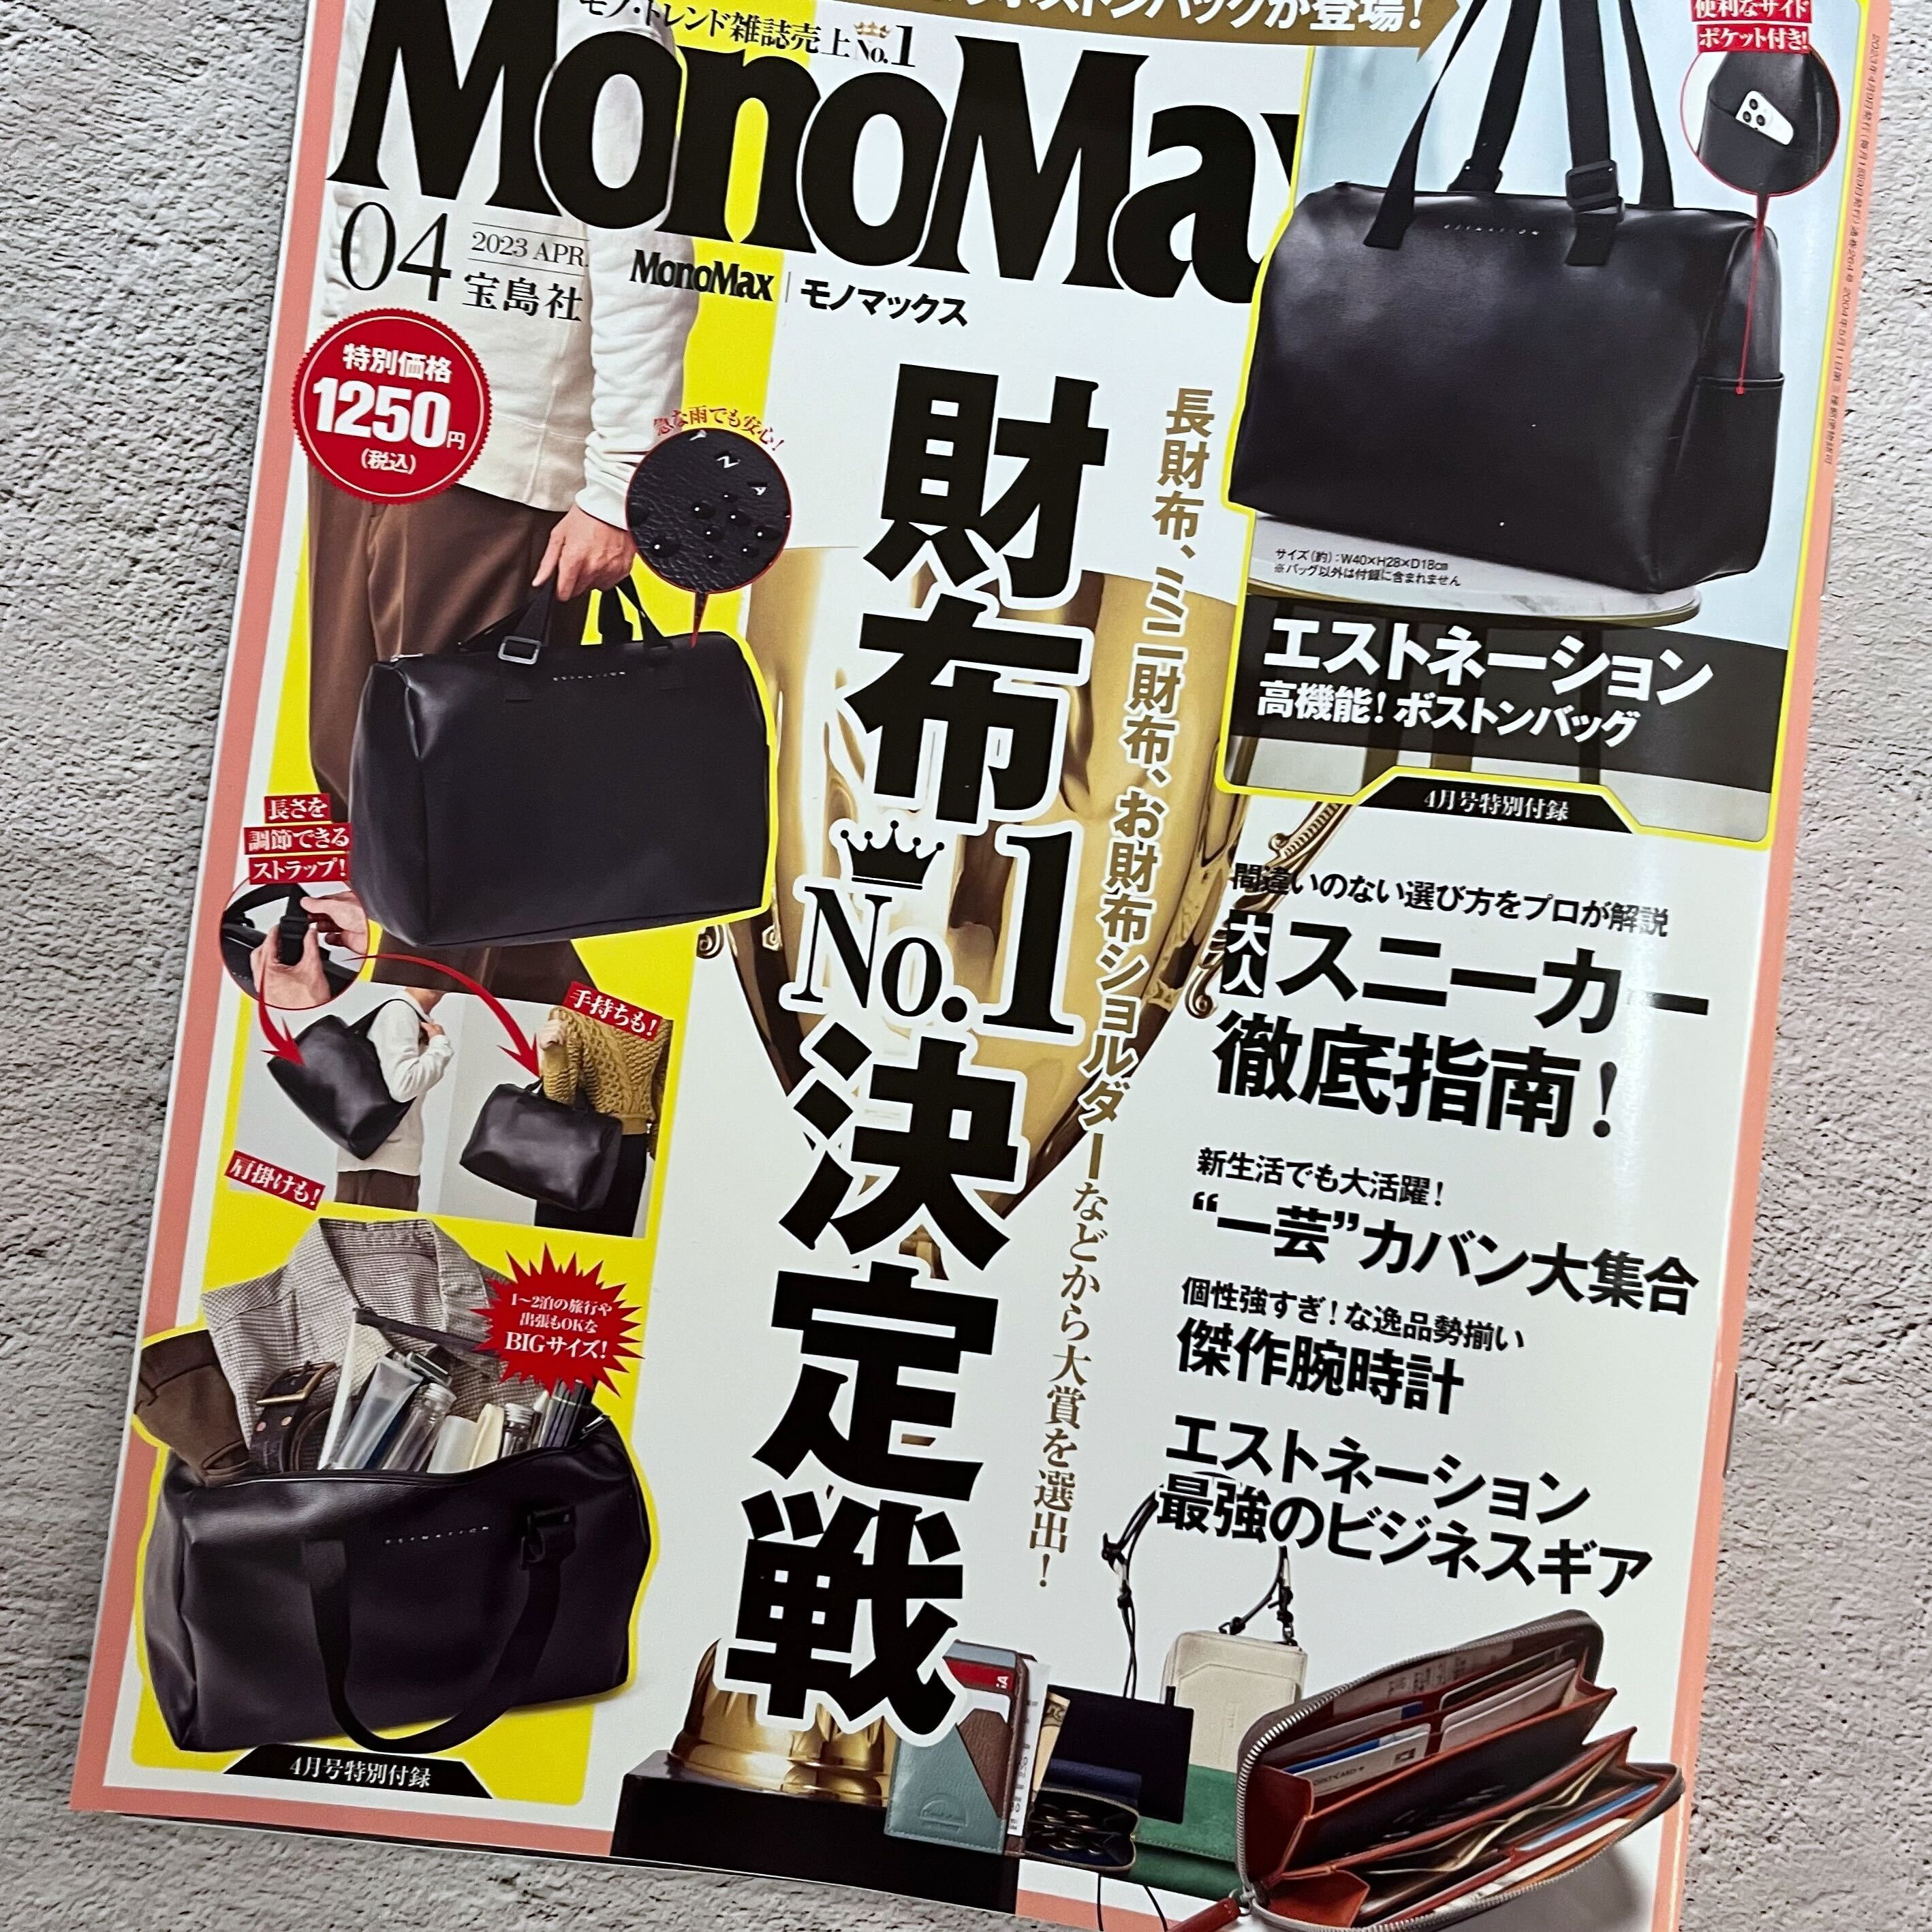 【掲載情報】MonoMax 4月号